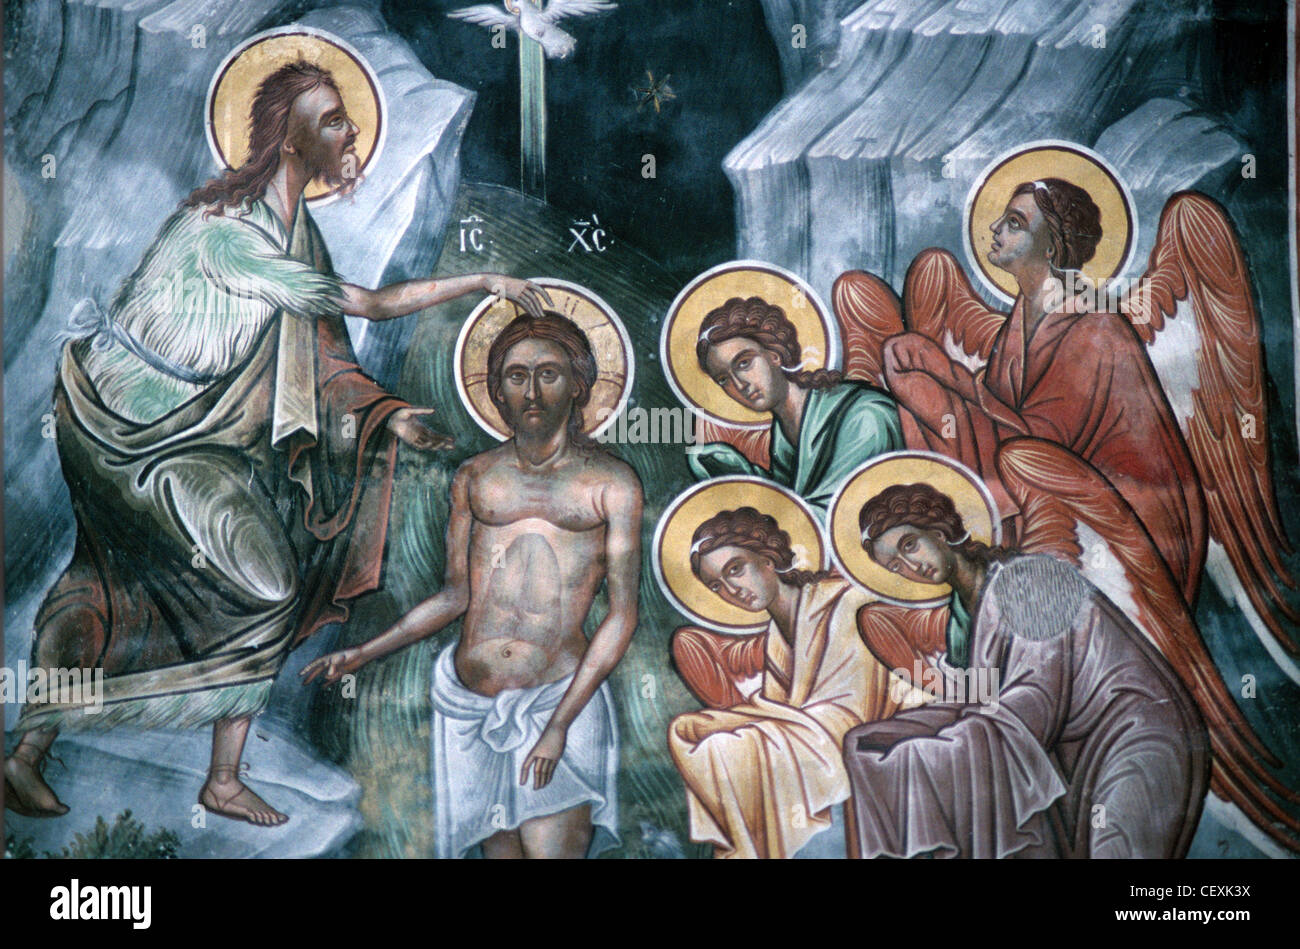 Bautismo, Cristo bautizando a sus seguidores representados con halos de oro, c18th fresco, Santo Monasterio de Kaisariani o Kessariani, Atenas, Grecia Foto de stock